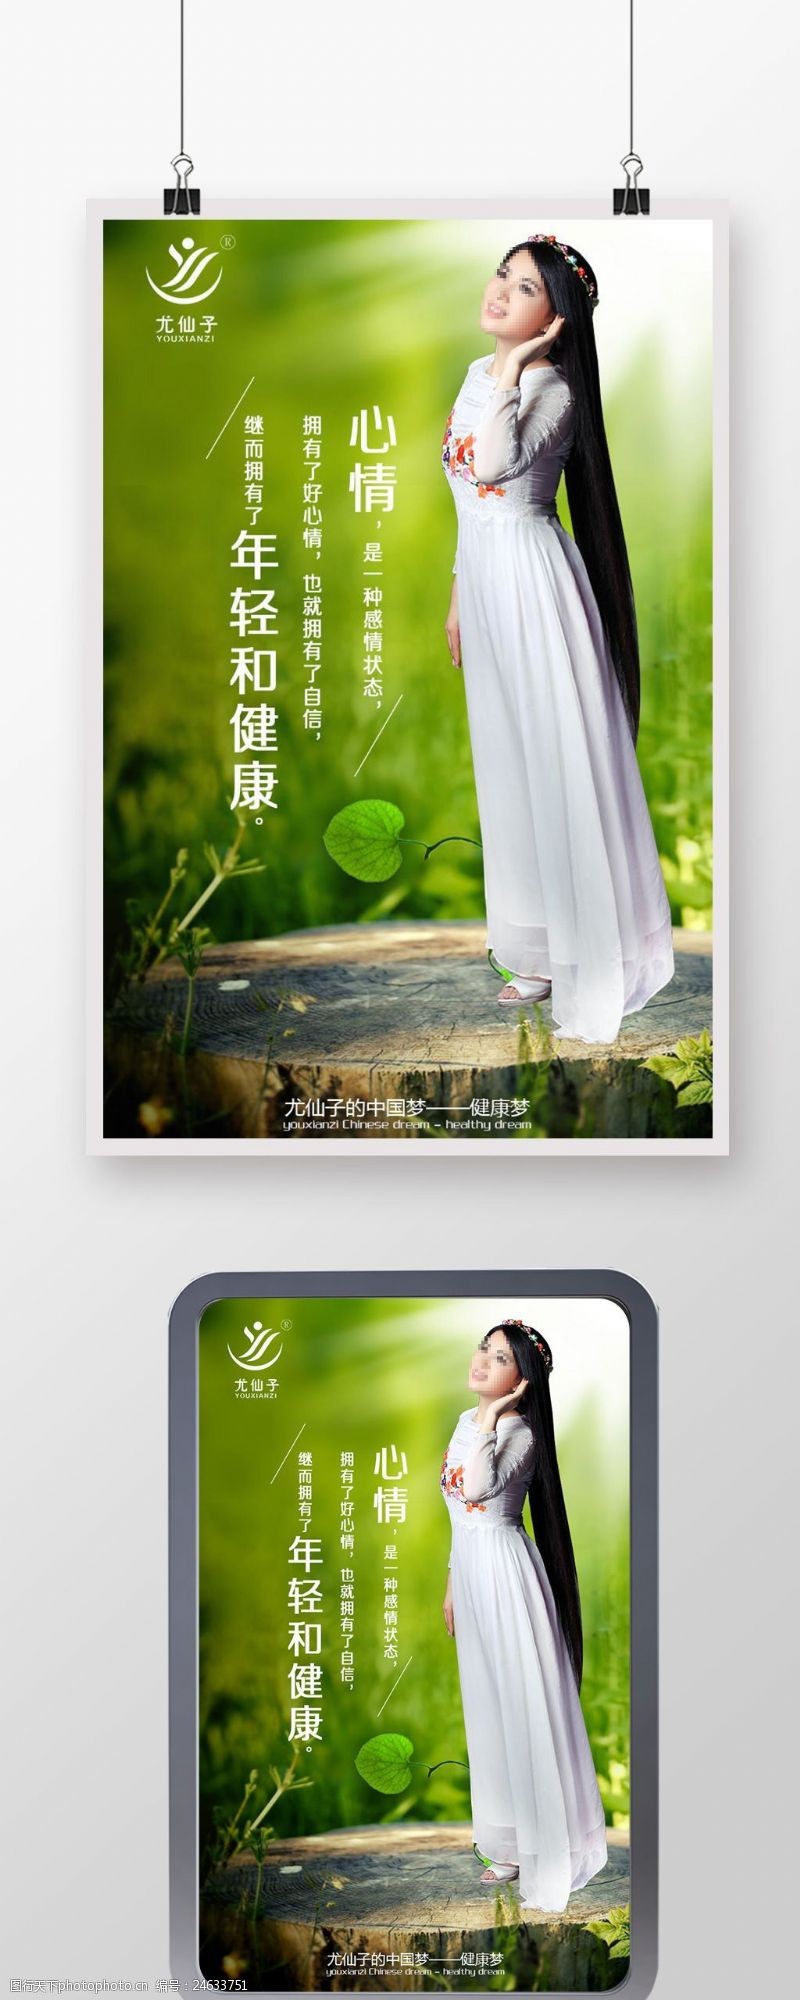 尤仙子梦想尤仙子企业文化励志青春绿色健康海报设计